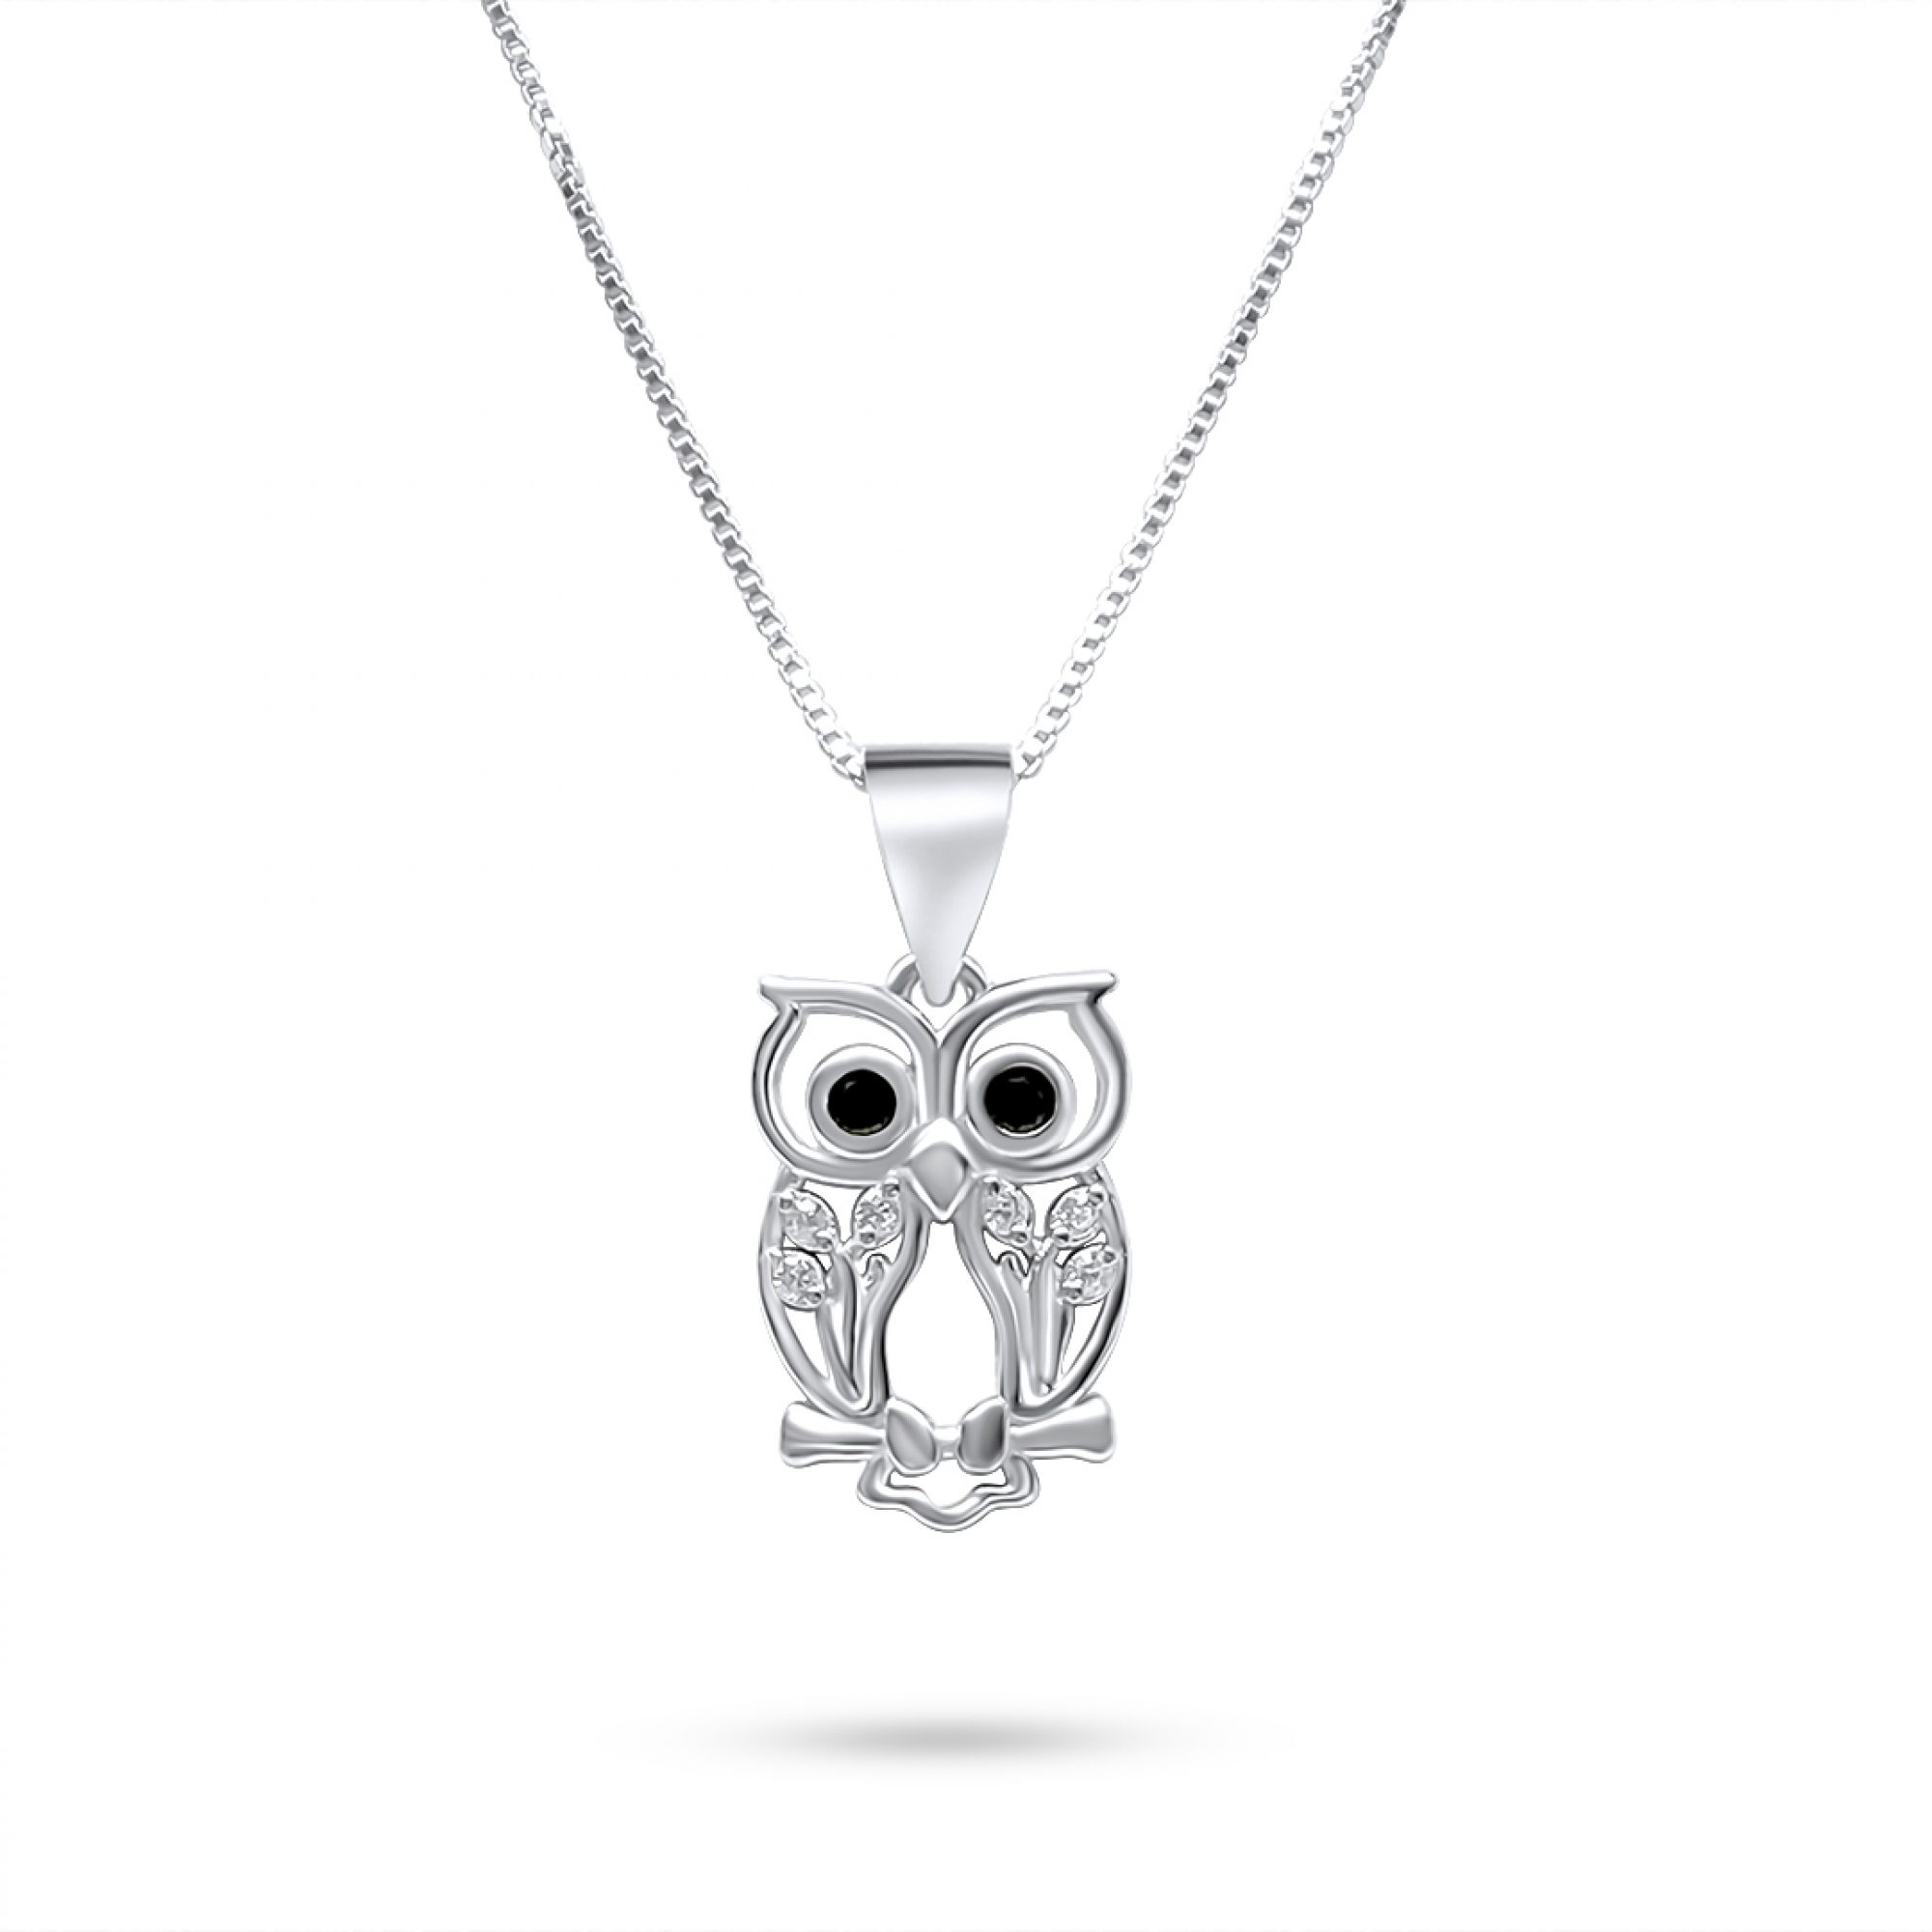 Owl necklace with zircon stones